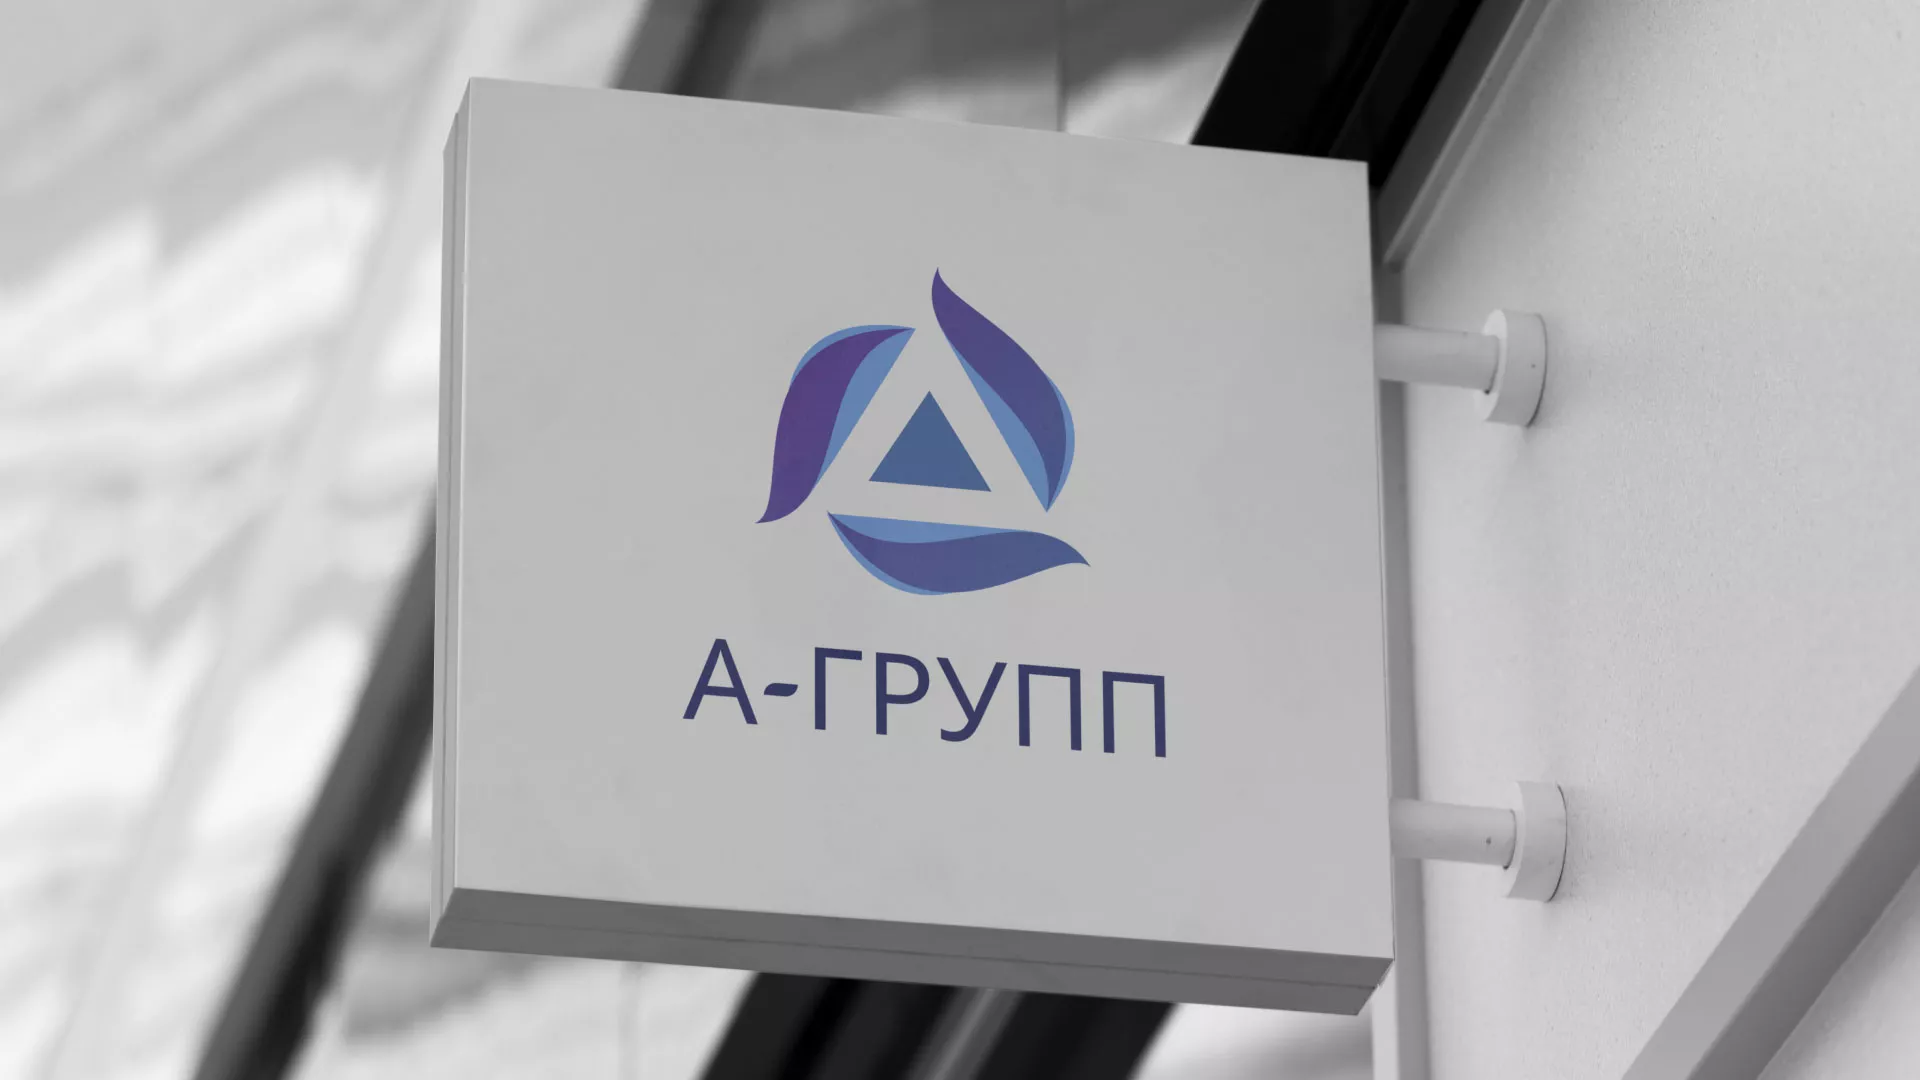 Создание логотипа компании «А-ГРУПП» в Пудоже